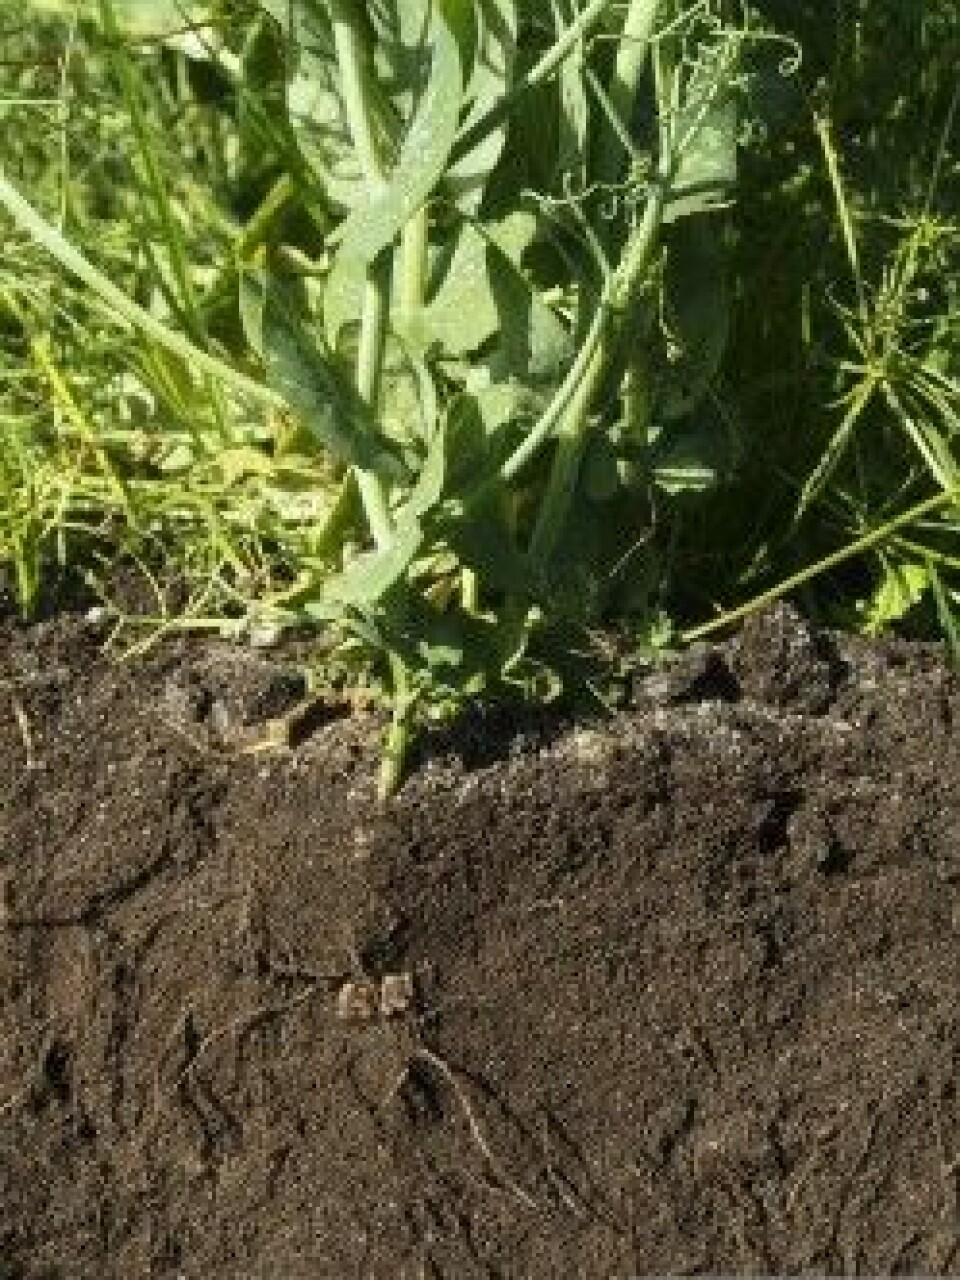 Bilde 3: Planterøtter kan forbedre jordstrukturen ved å danne nye porer i jorda og slik løsne opp i pakkeskadene. (Foto: NIBIO)